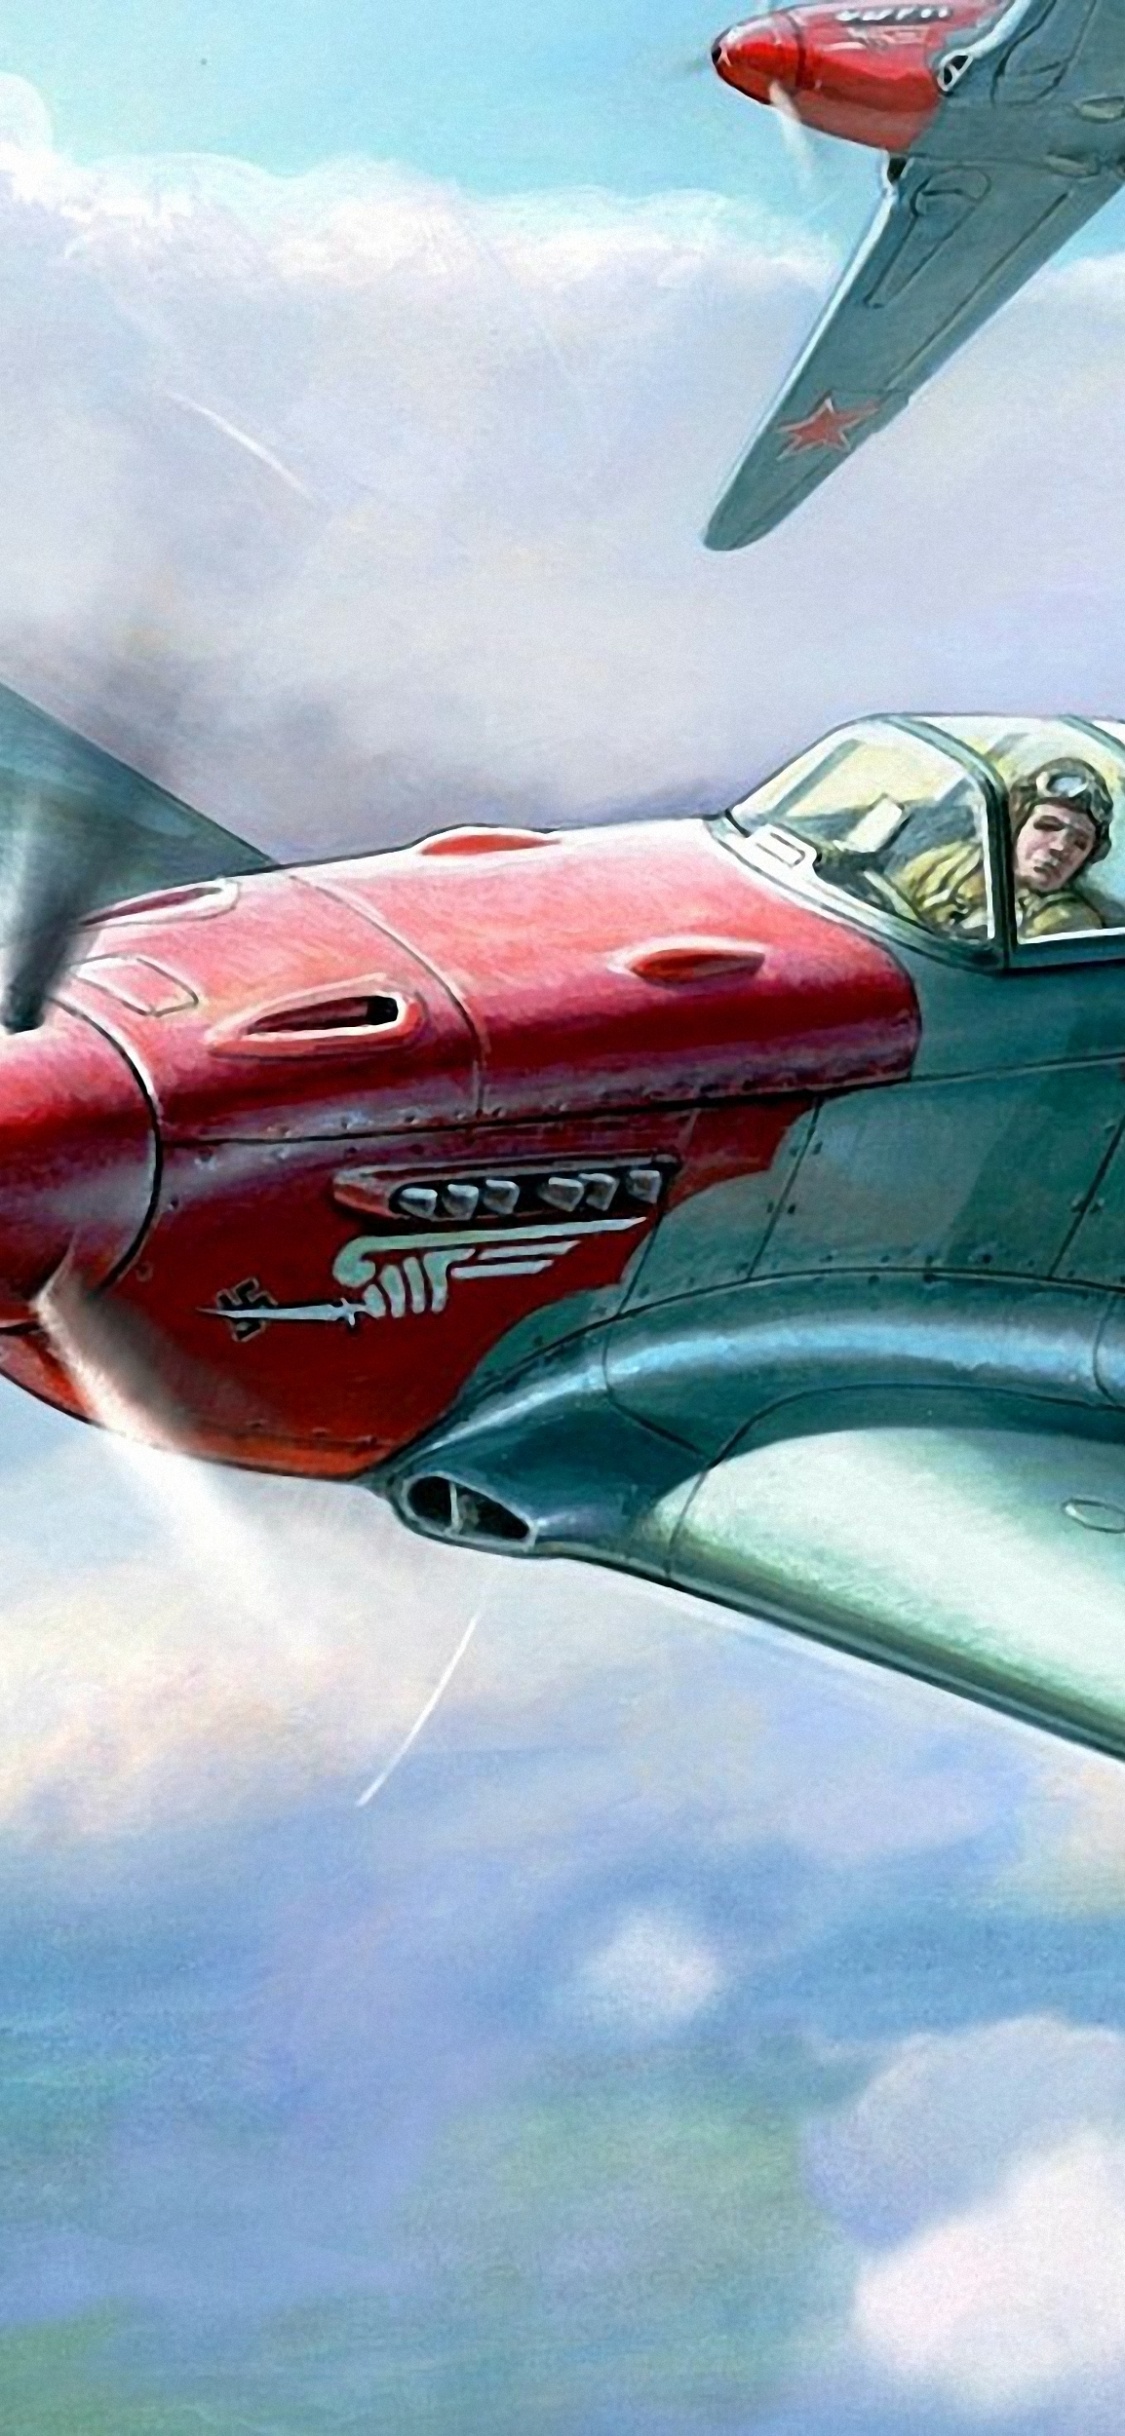 Rotes Und Graues Düsenflugzeug in Der Luft. Wallpaper in 1125x2436 Resolution